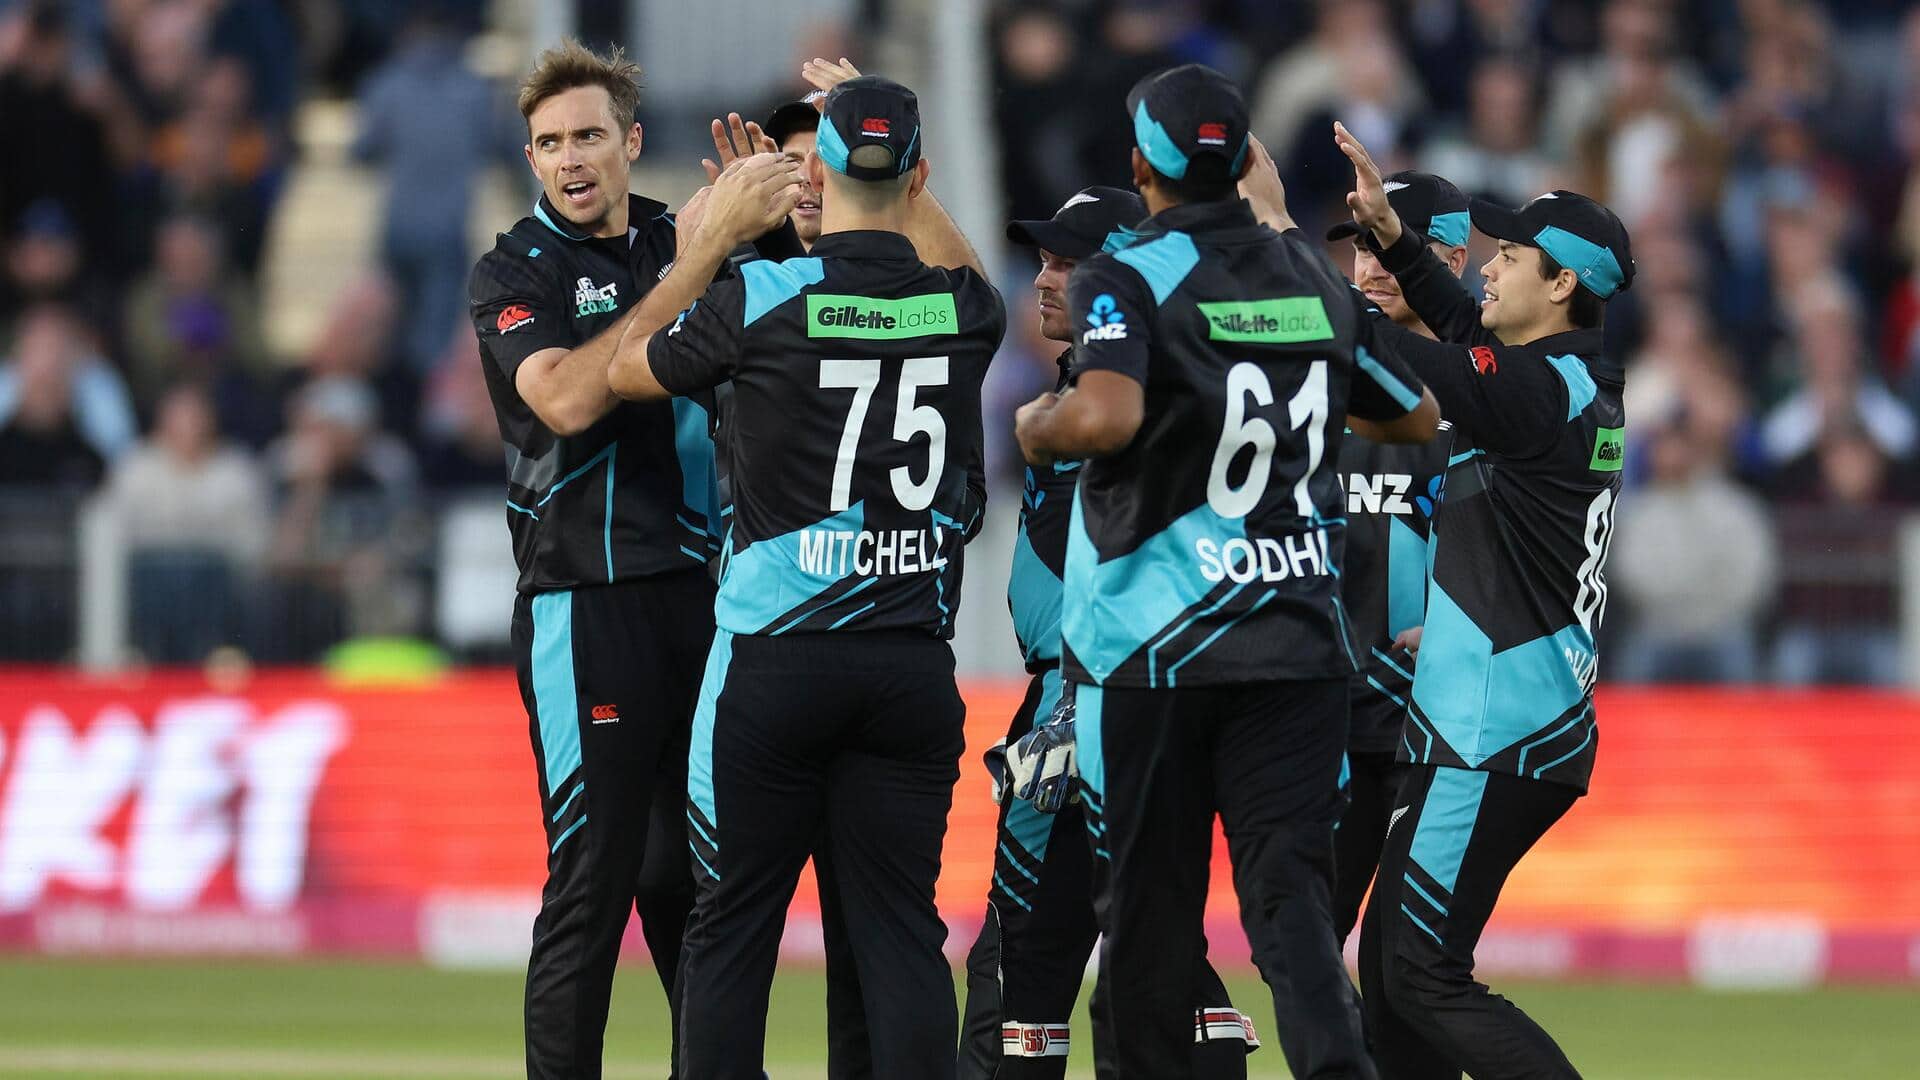 बांग्लादेश के खिलाफ टी-20 सीरीज के लिए न्यूजीलैंड की टीम घोषित, कप्तान विलियमसन की हुई वापसी 